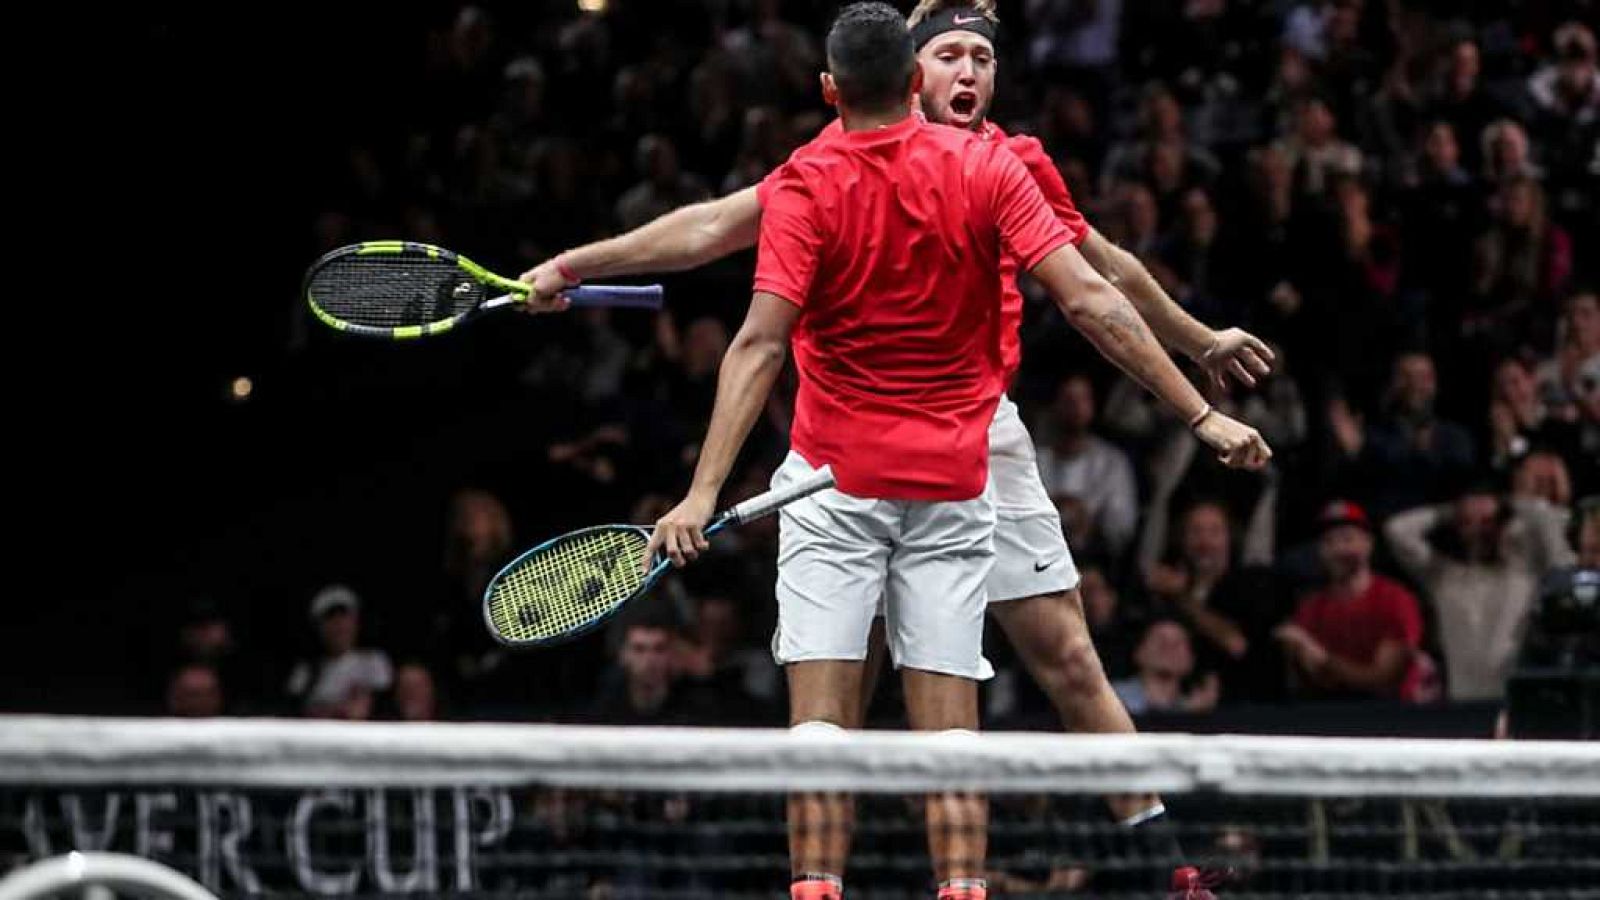 Tenis - Laver Cup 2017 Dobles: R. Nadal / T. Berdych - N.Kyrgios/ J. Sock